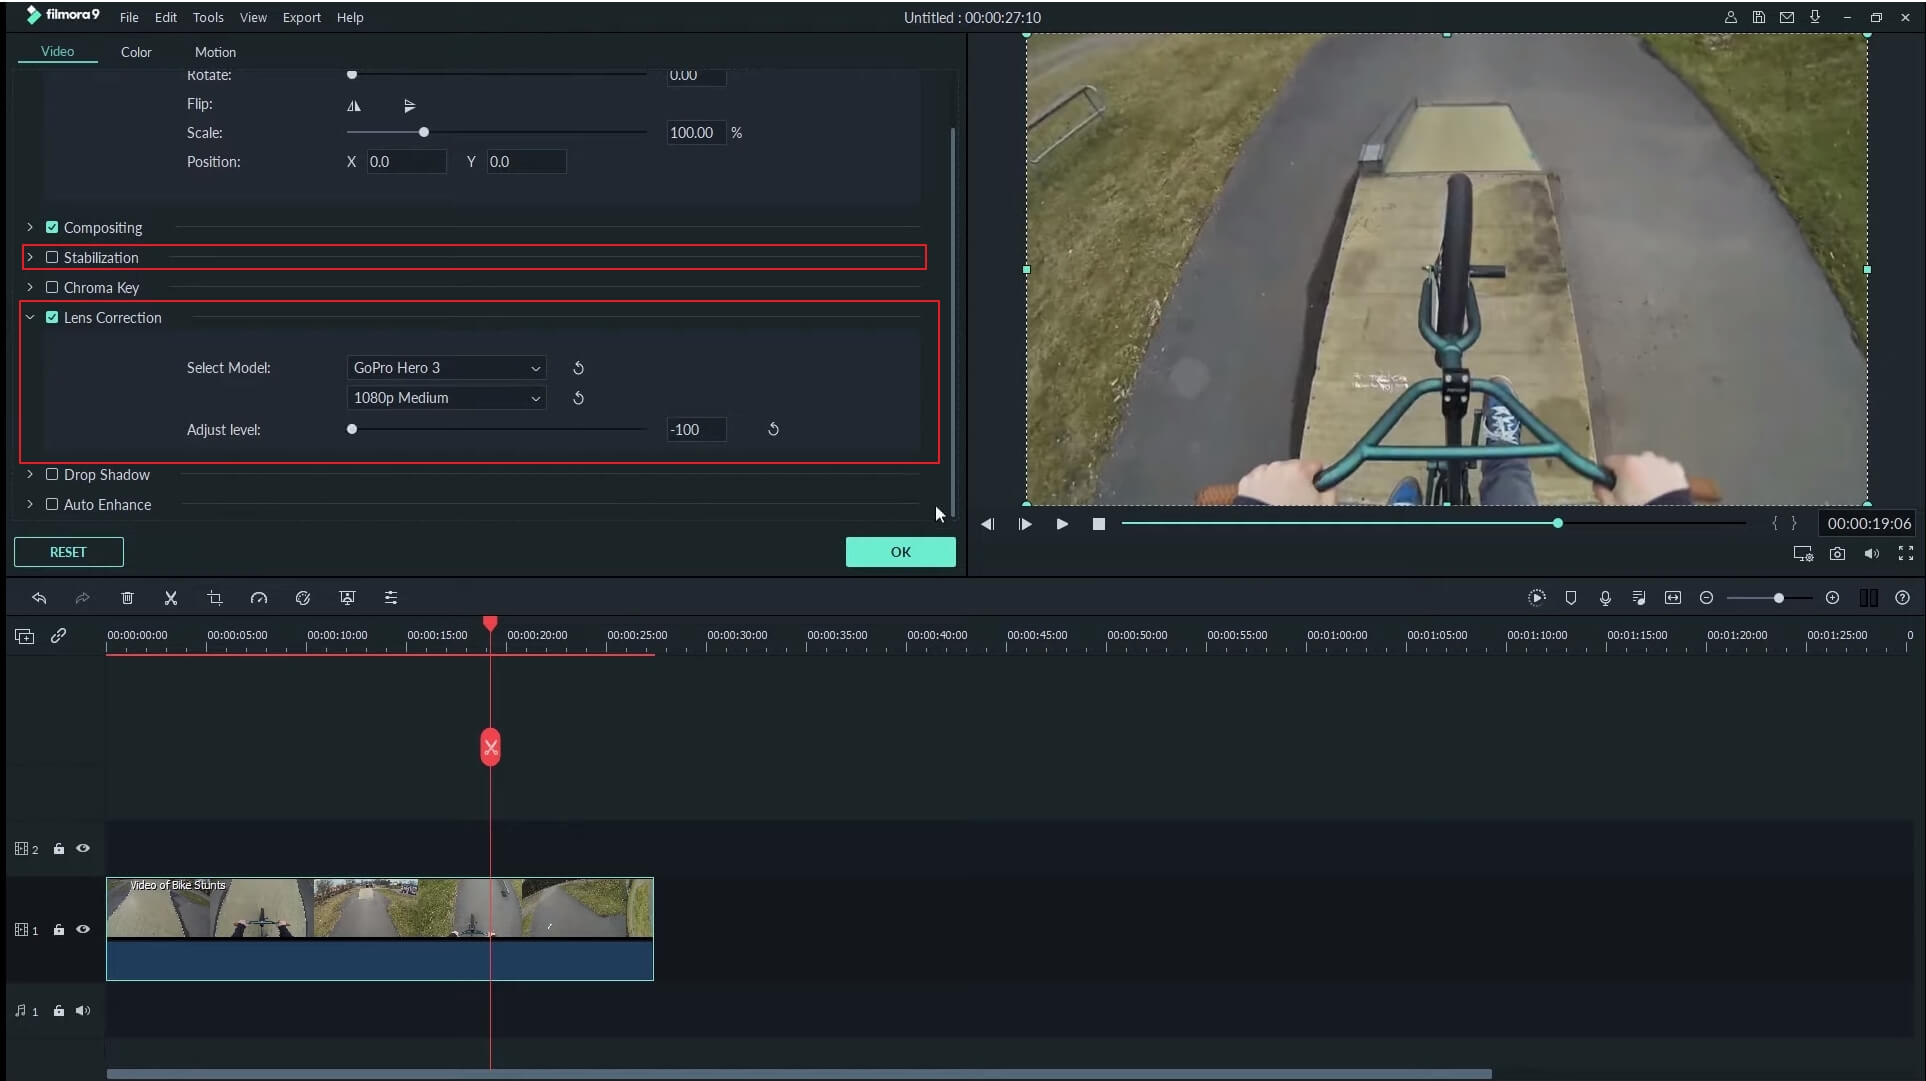 Action Cam Editing Tools in Filmora9